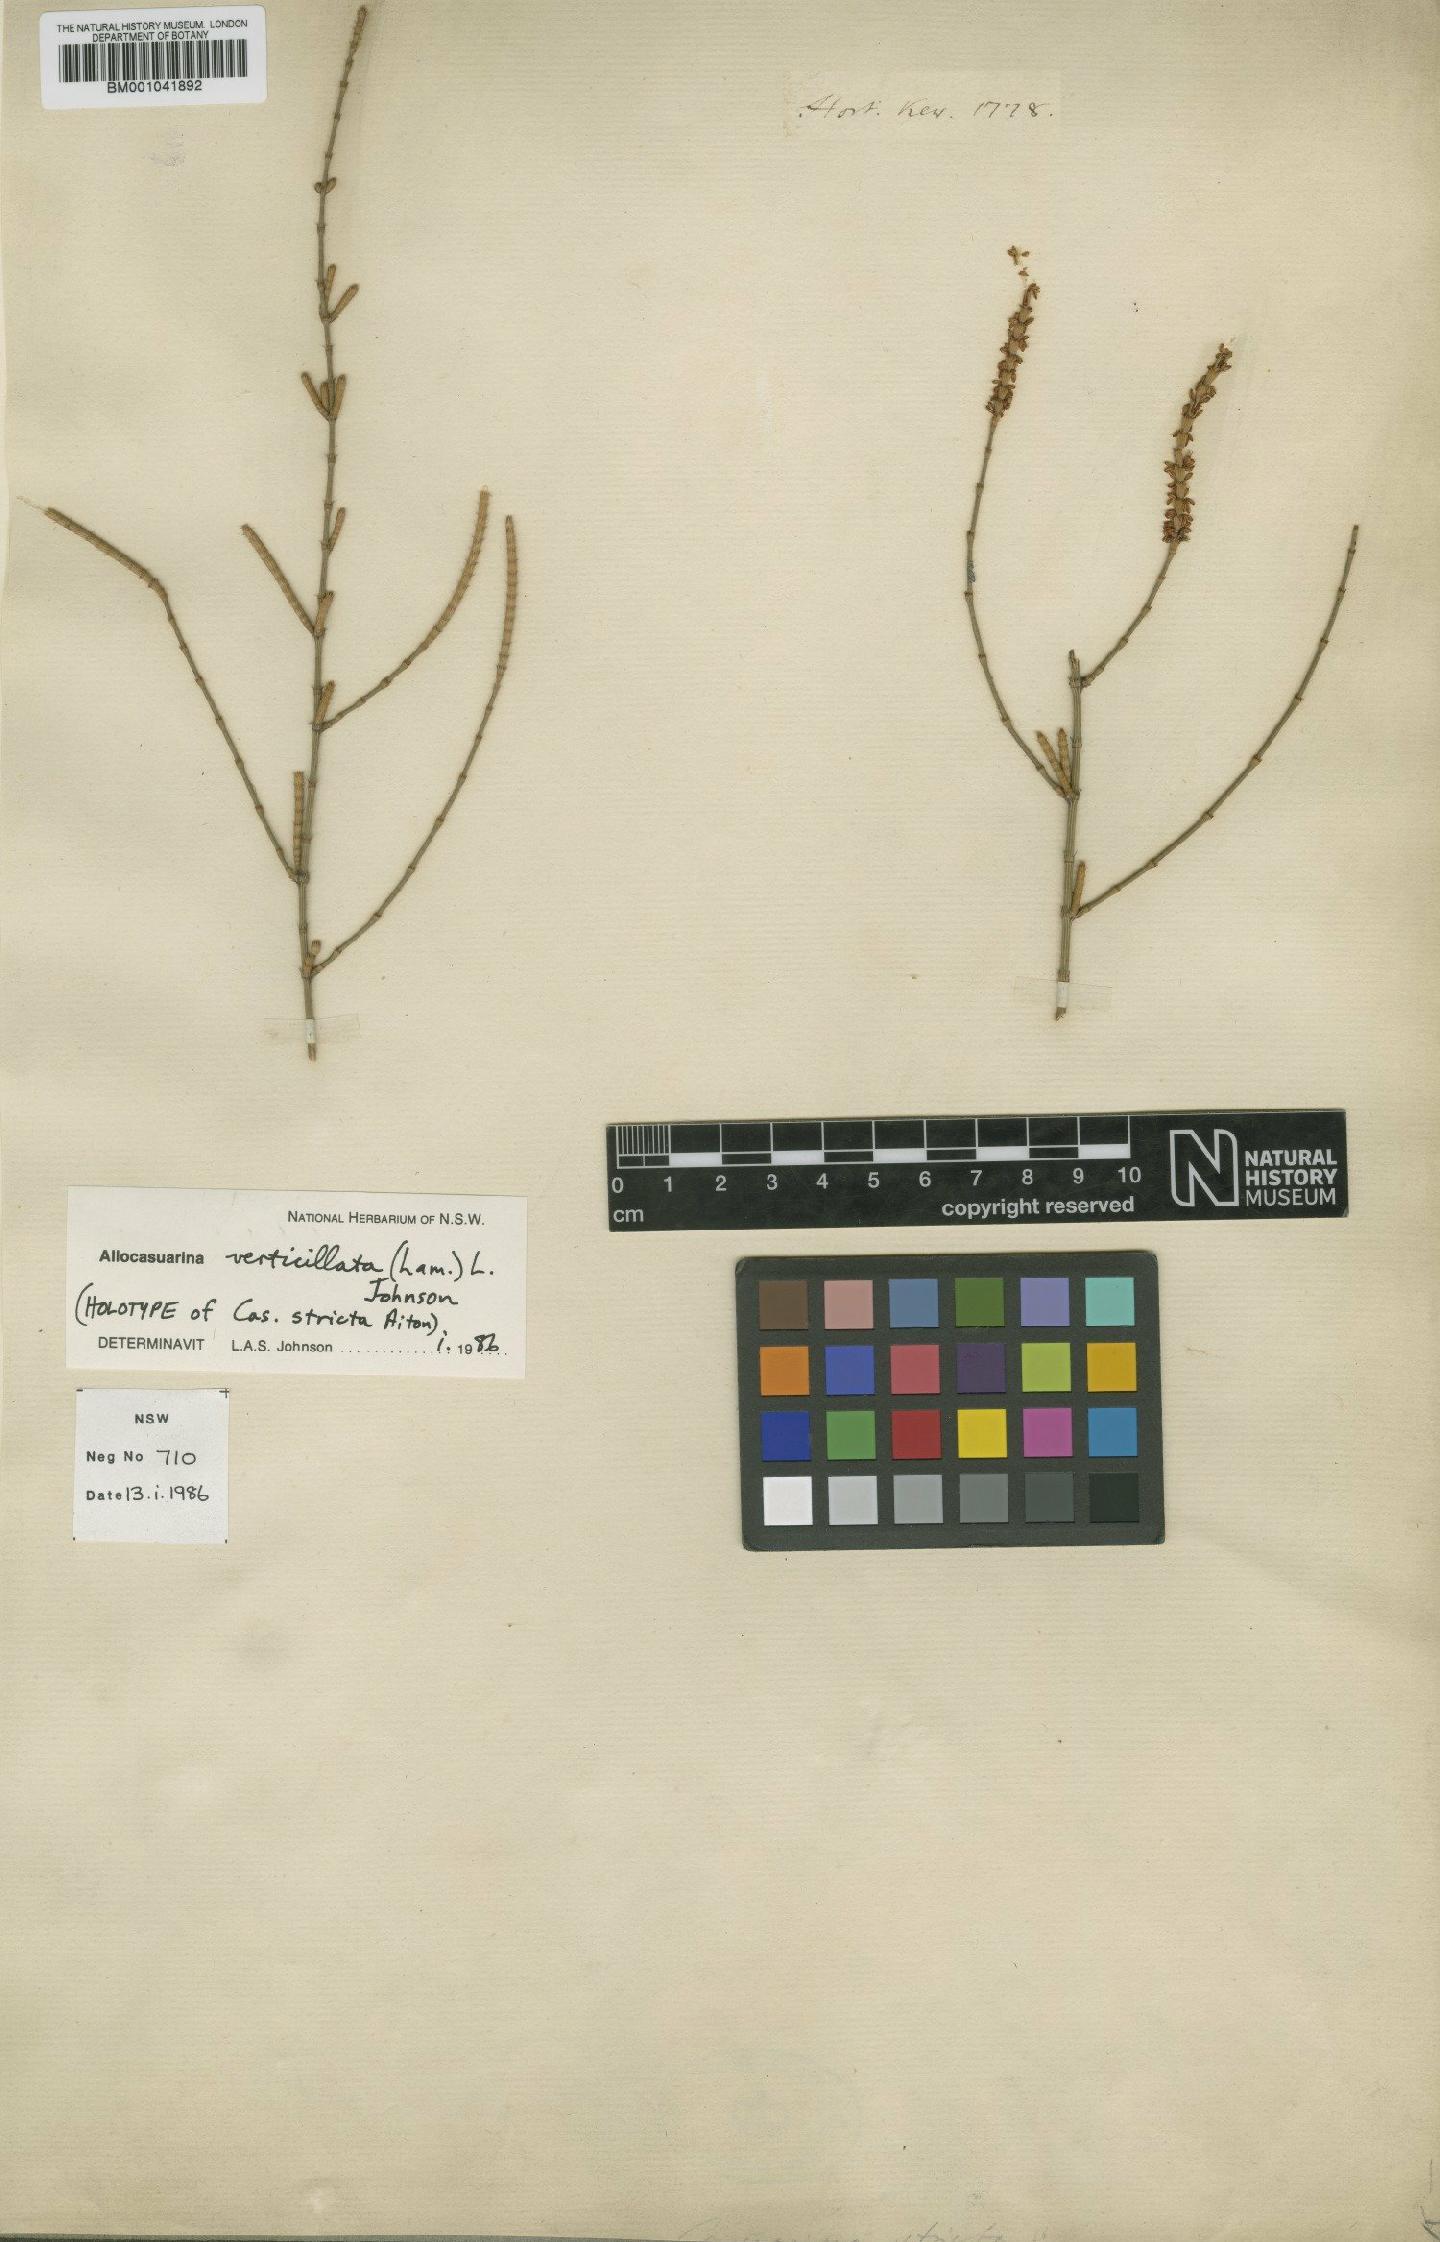 To NHMUK collection (Casuarina L.; Holotype; NHMUK:ecatalogue:1987972)